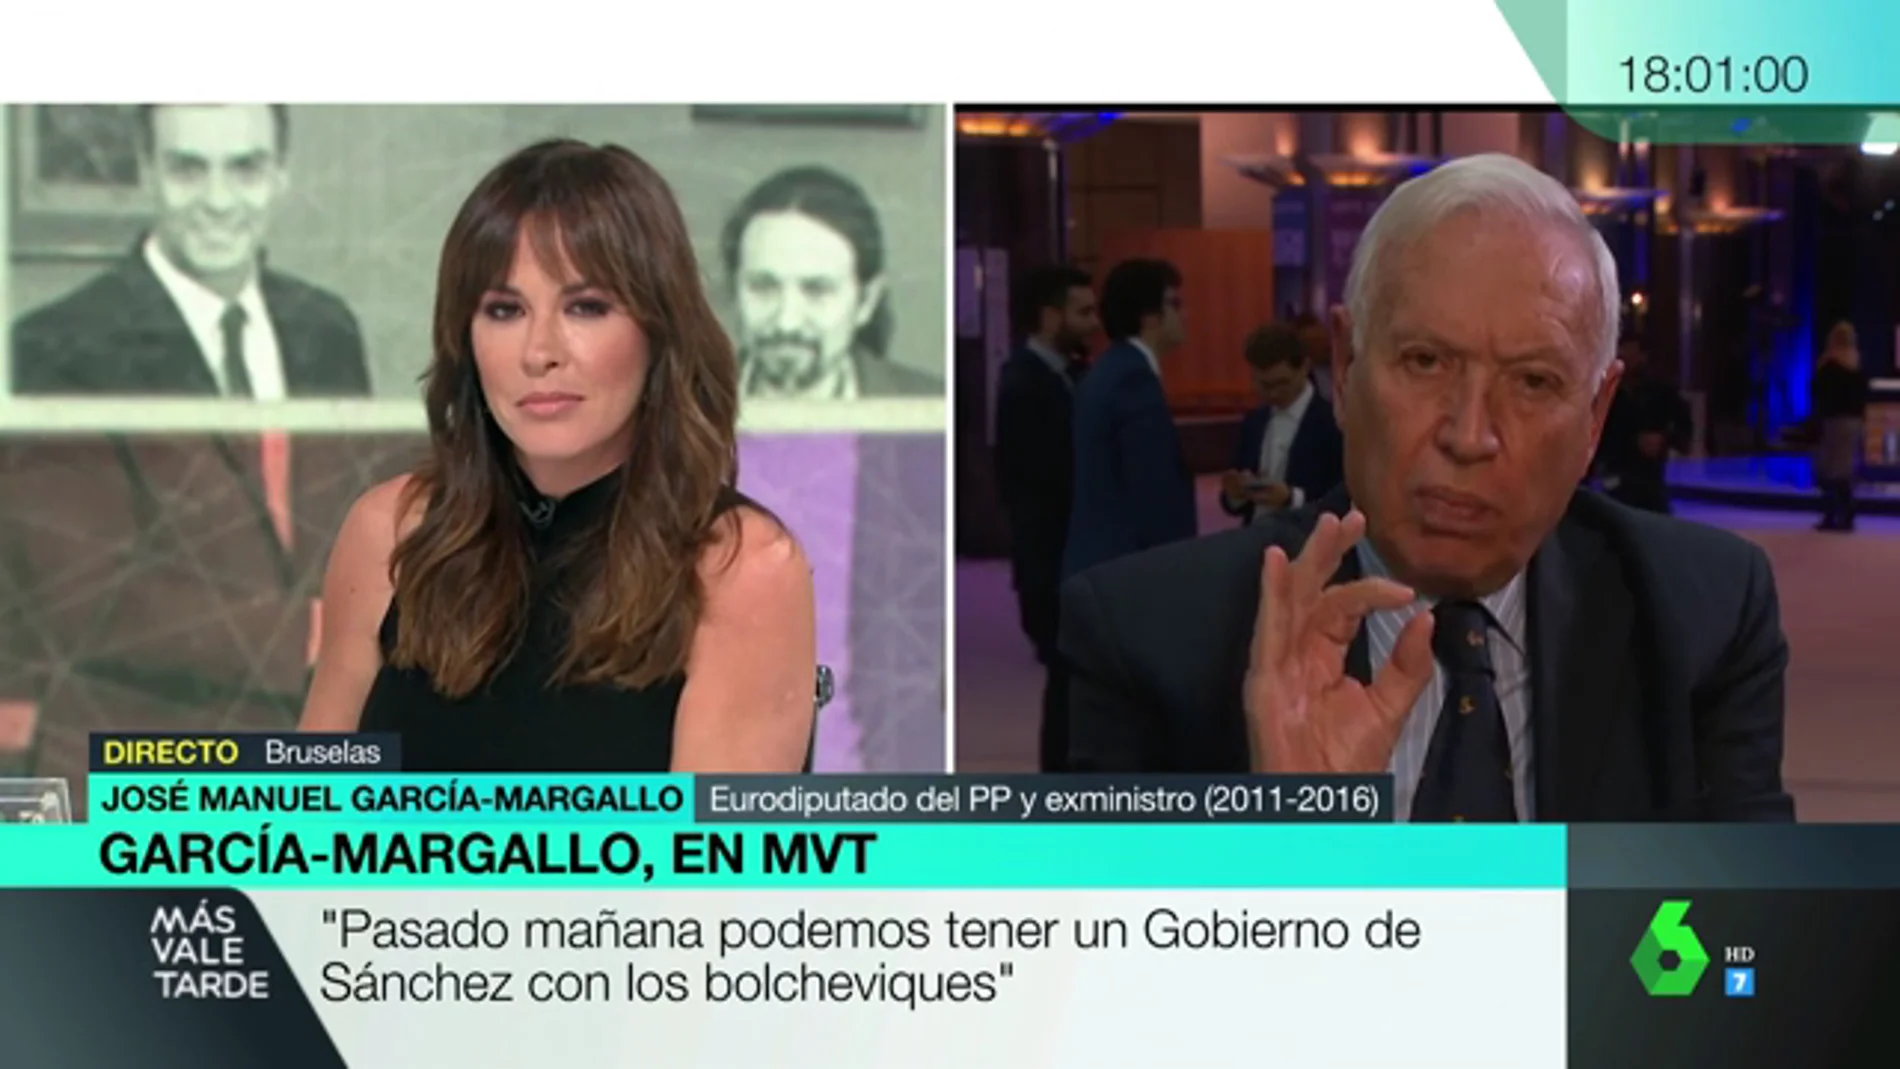 García-Margallo: "Pasado mañana podemos tener un Gobierno de Sánchez con los bolcheviques"